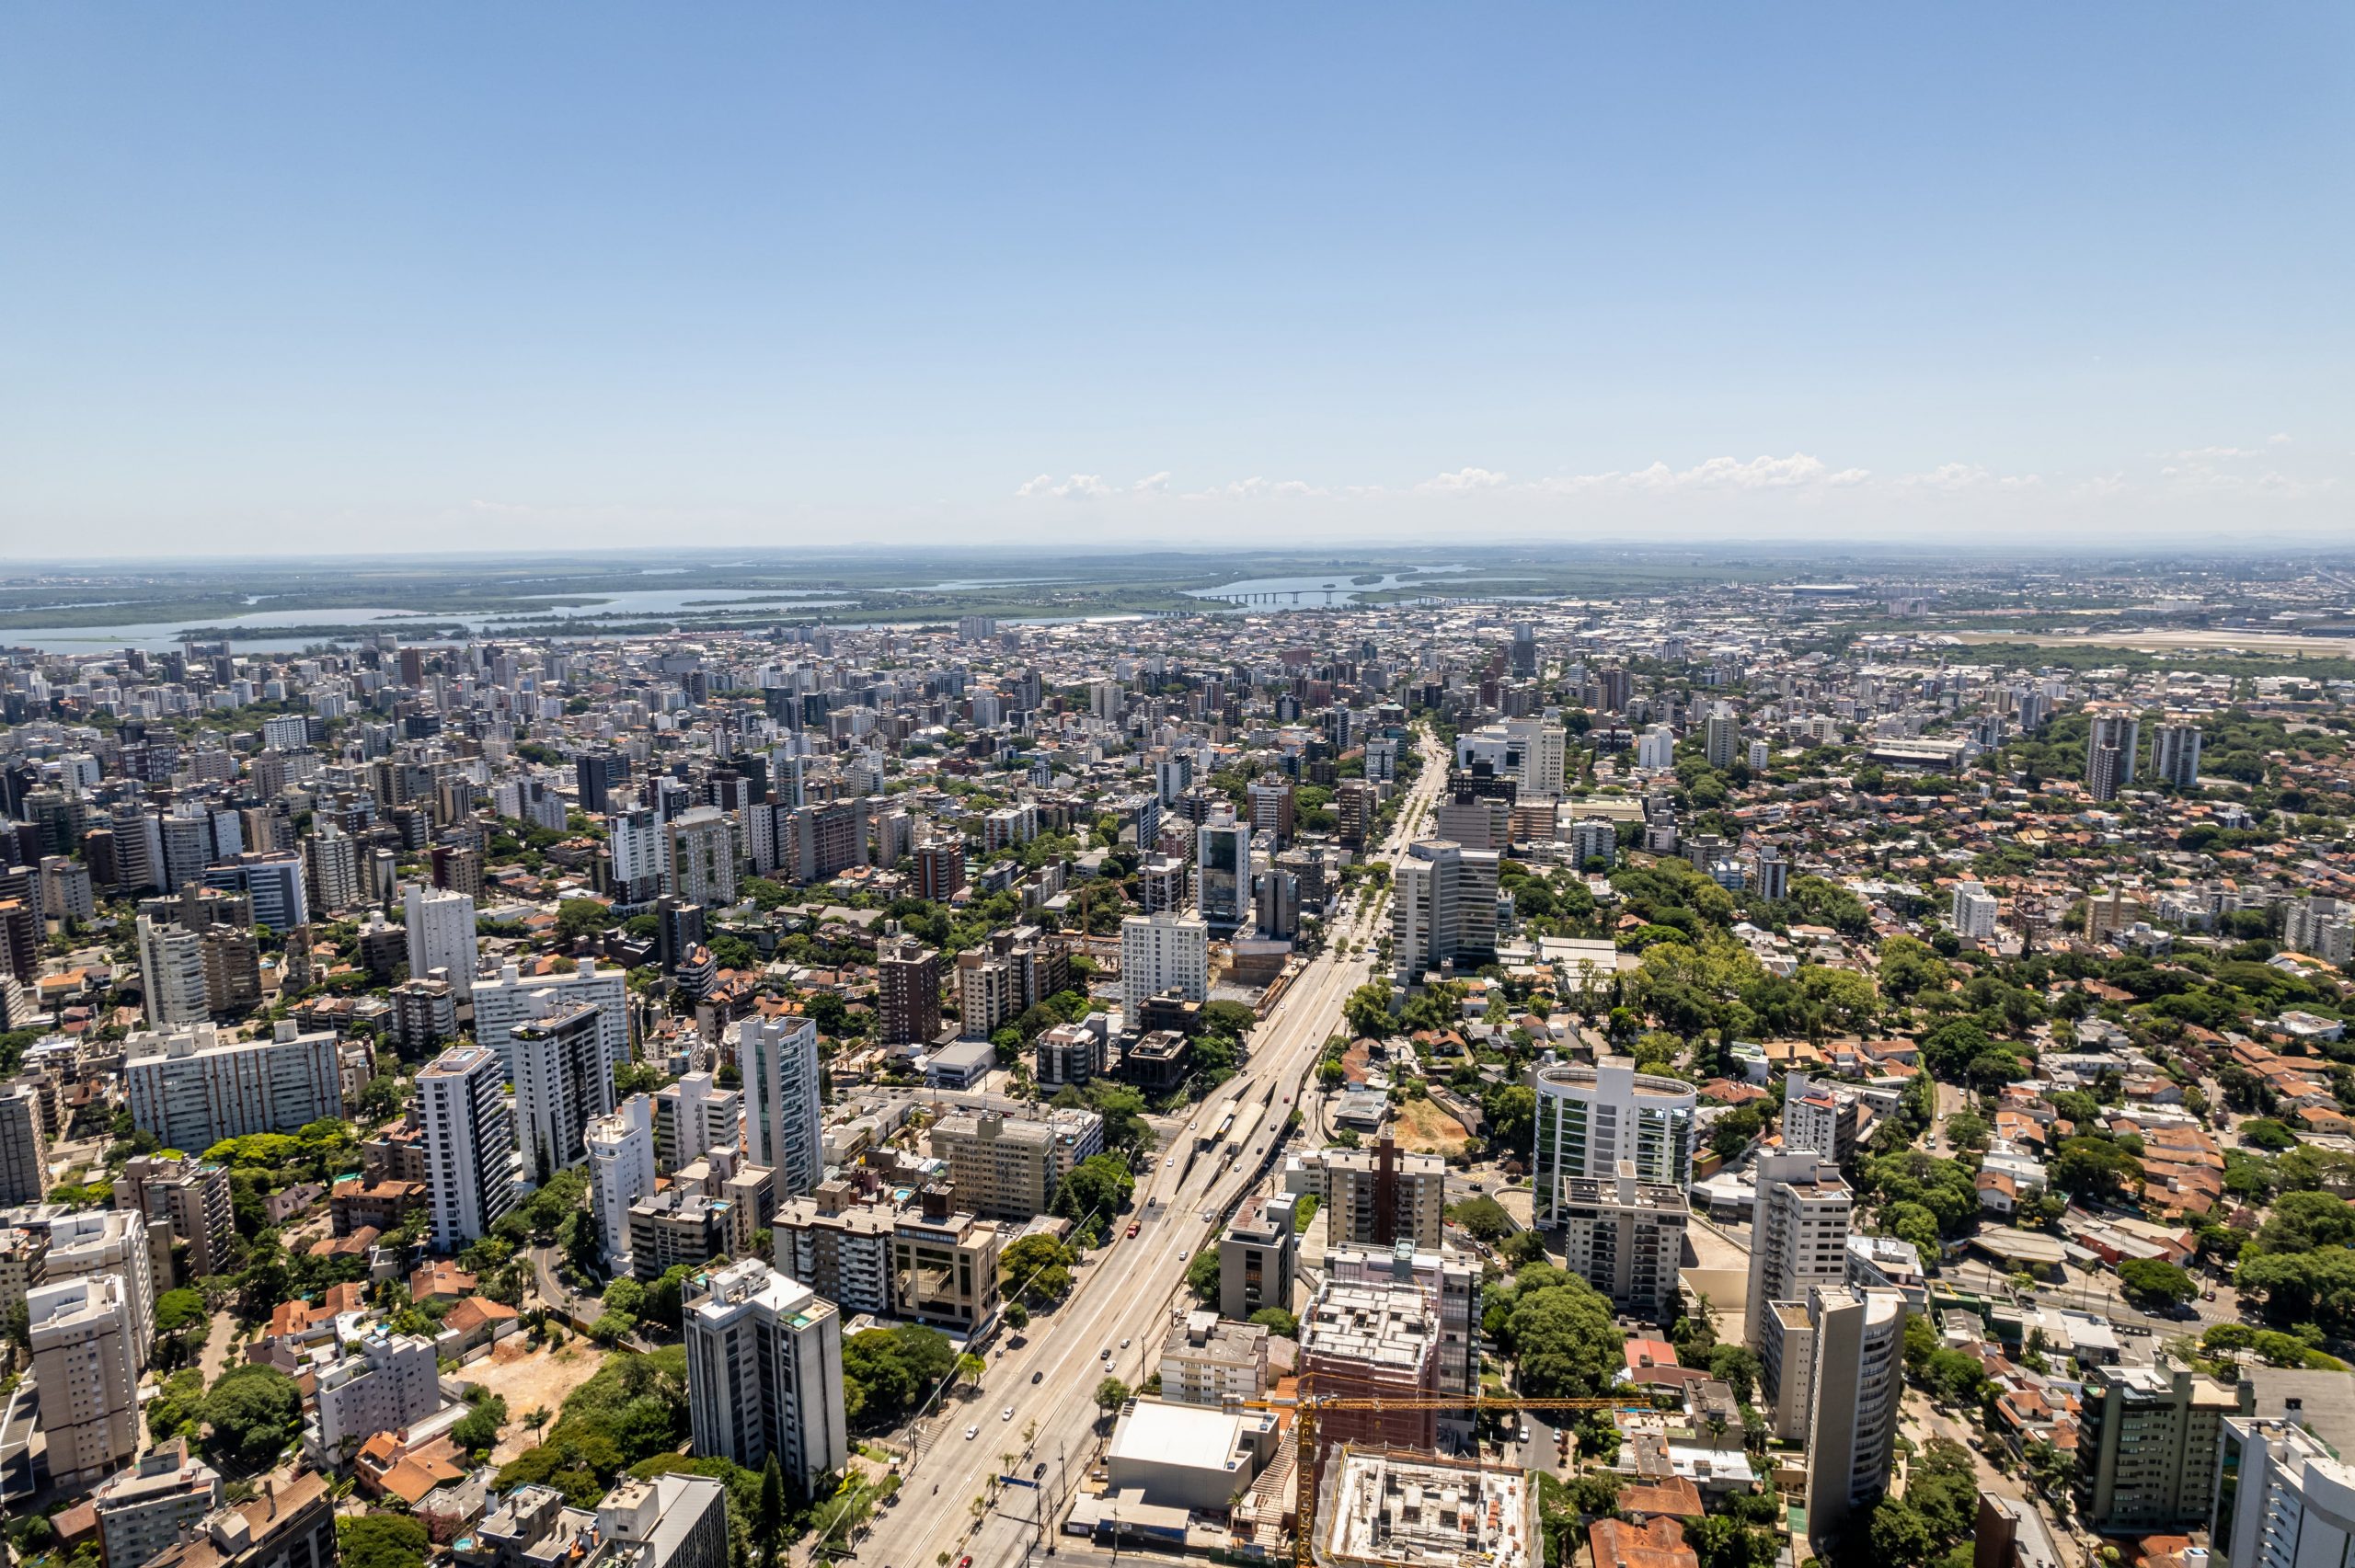 Artigo, Porto Alegre: Uma capital centenária com problemas